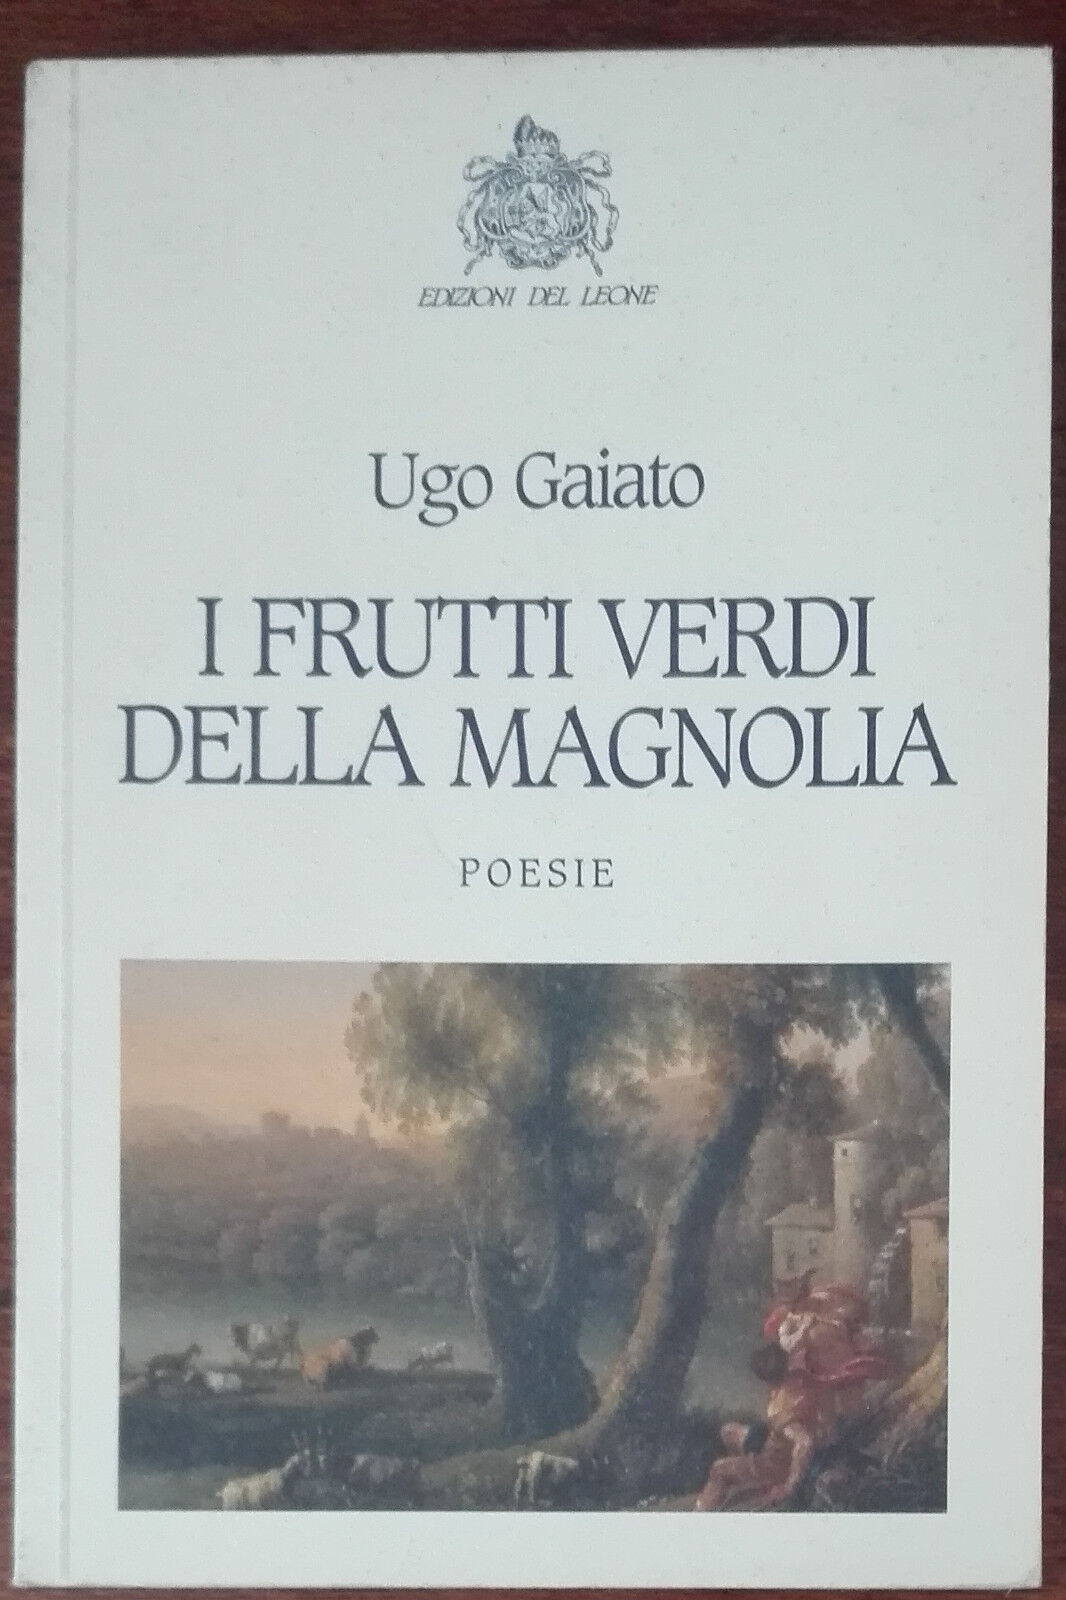 I frutti verdi della magnolia - Ugo Gaiato - Edizioni del Leone, 2009 - A